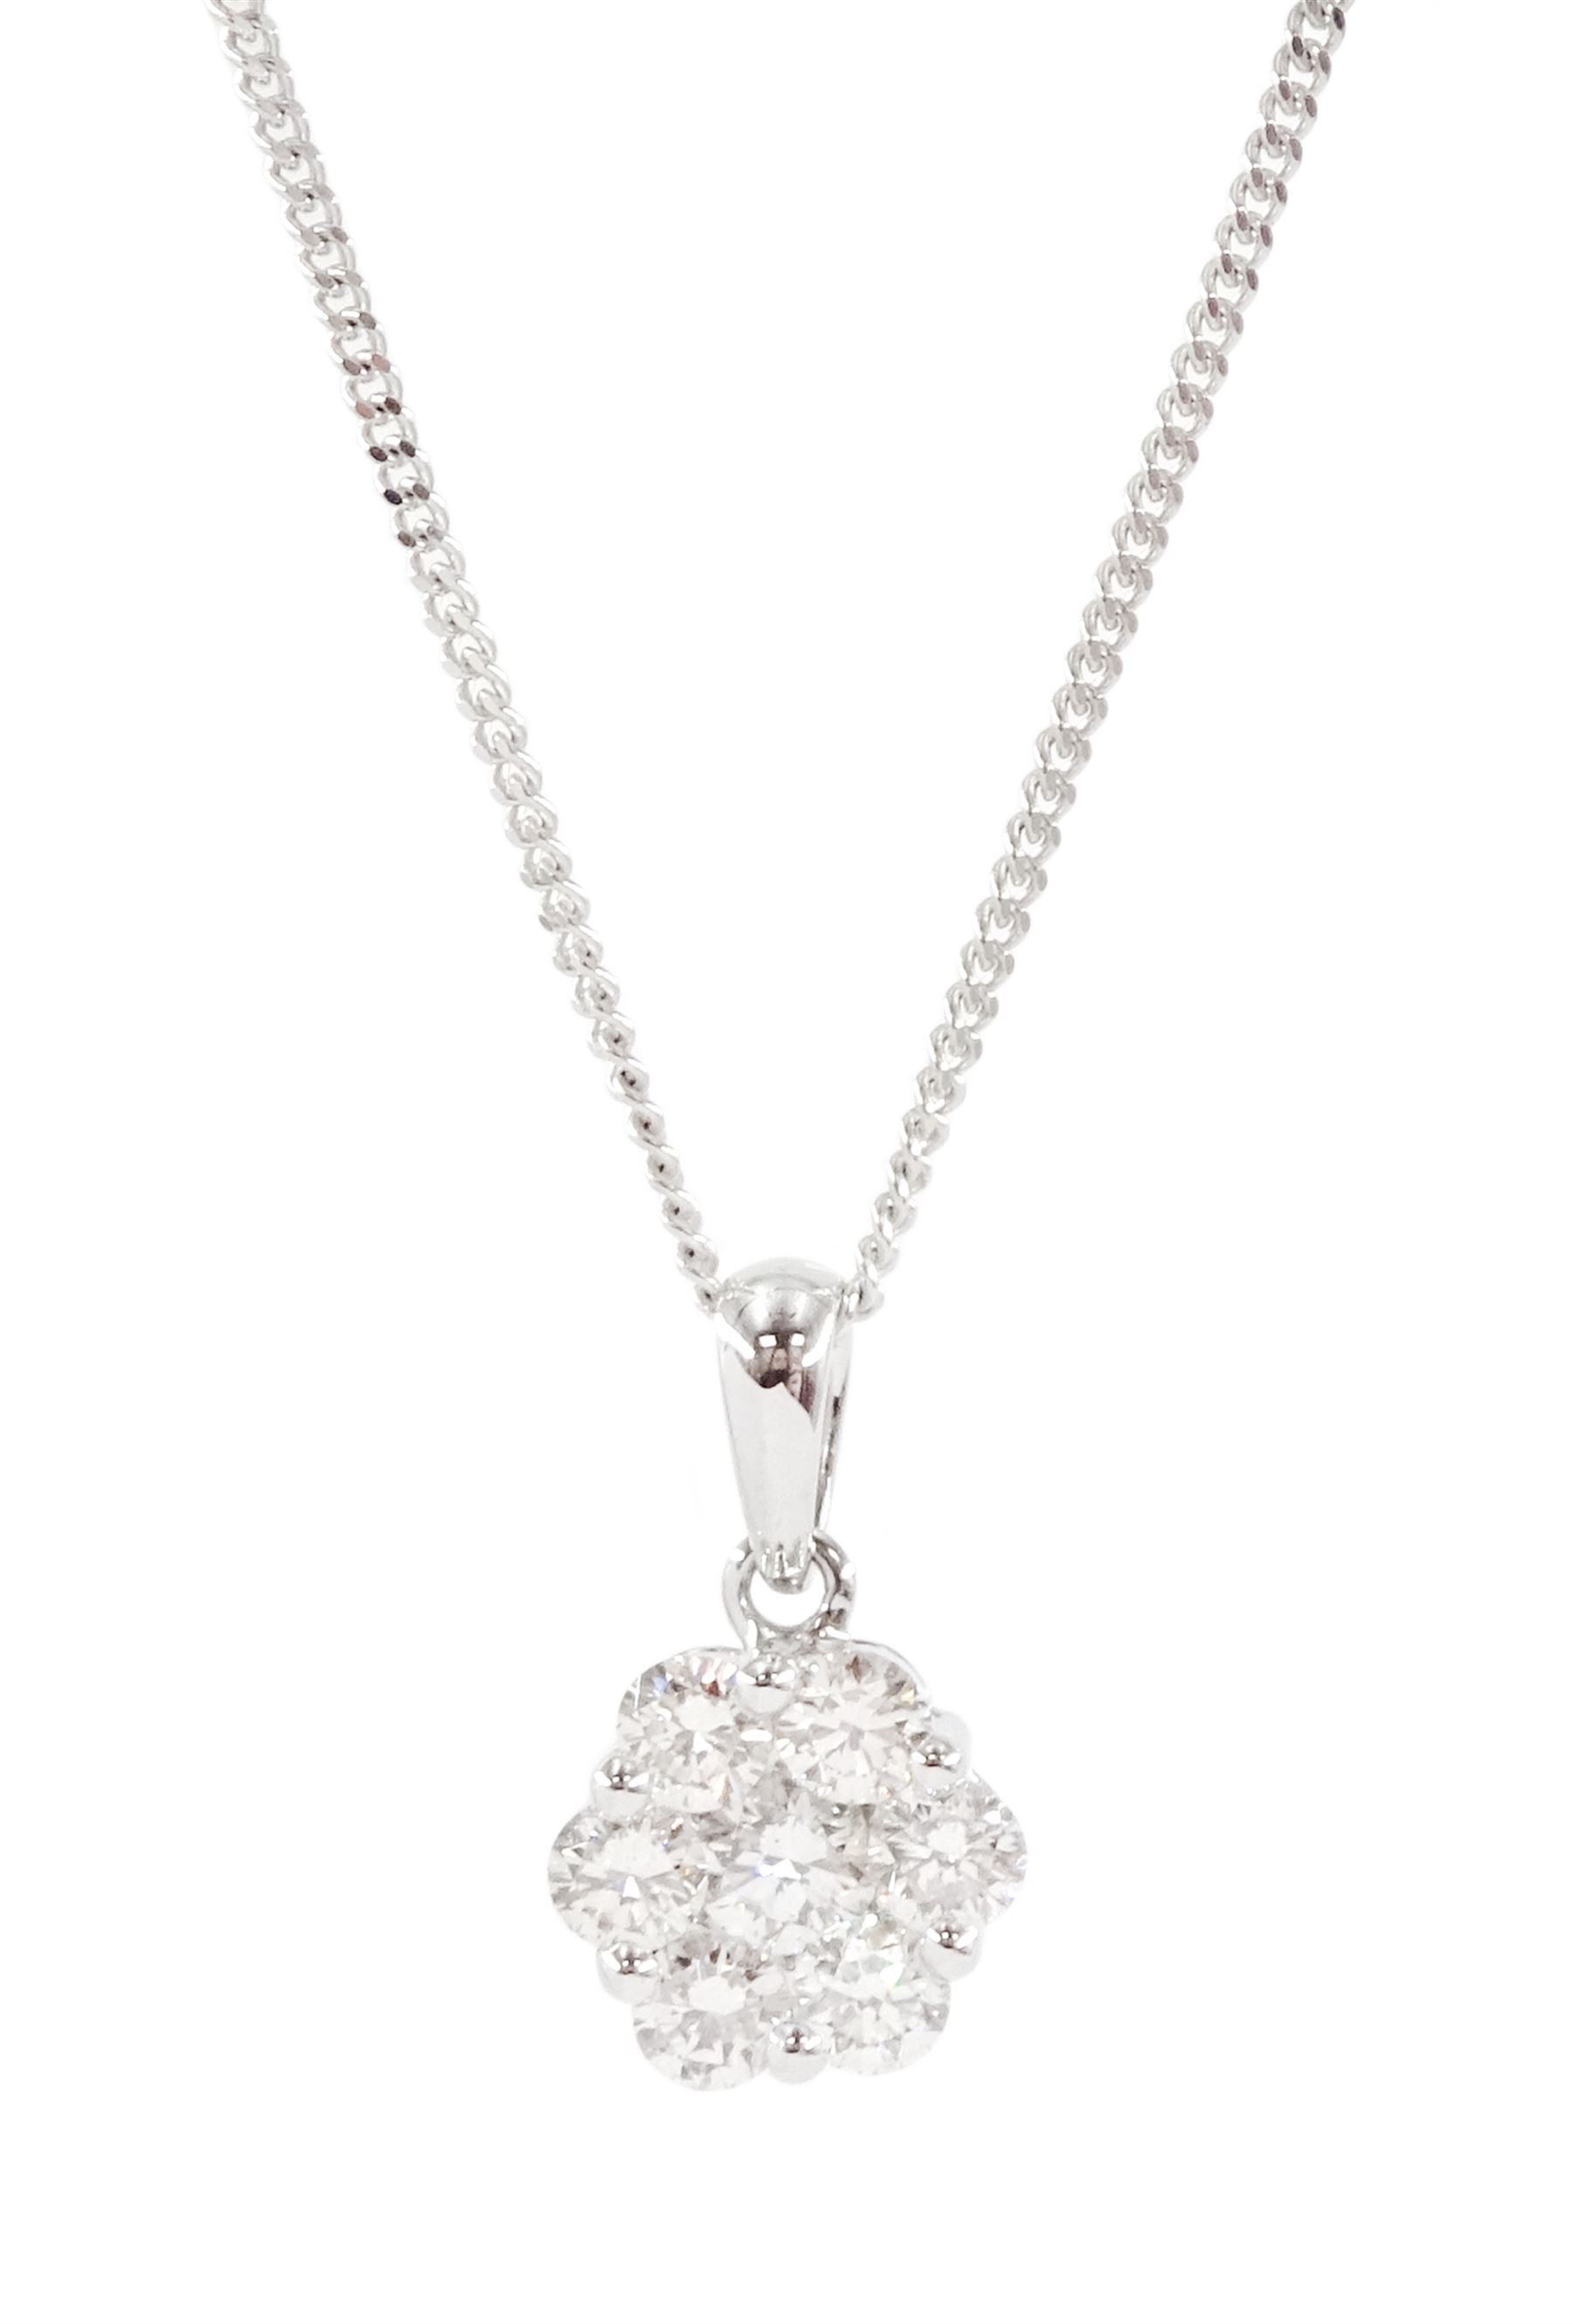 18ct white gold seven stone round brilliant cut diamond daisy flower head cluster pendant